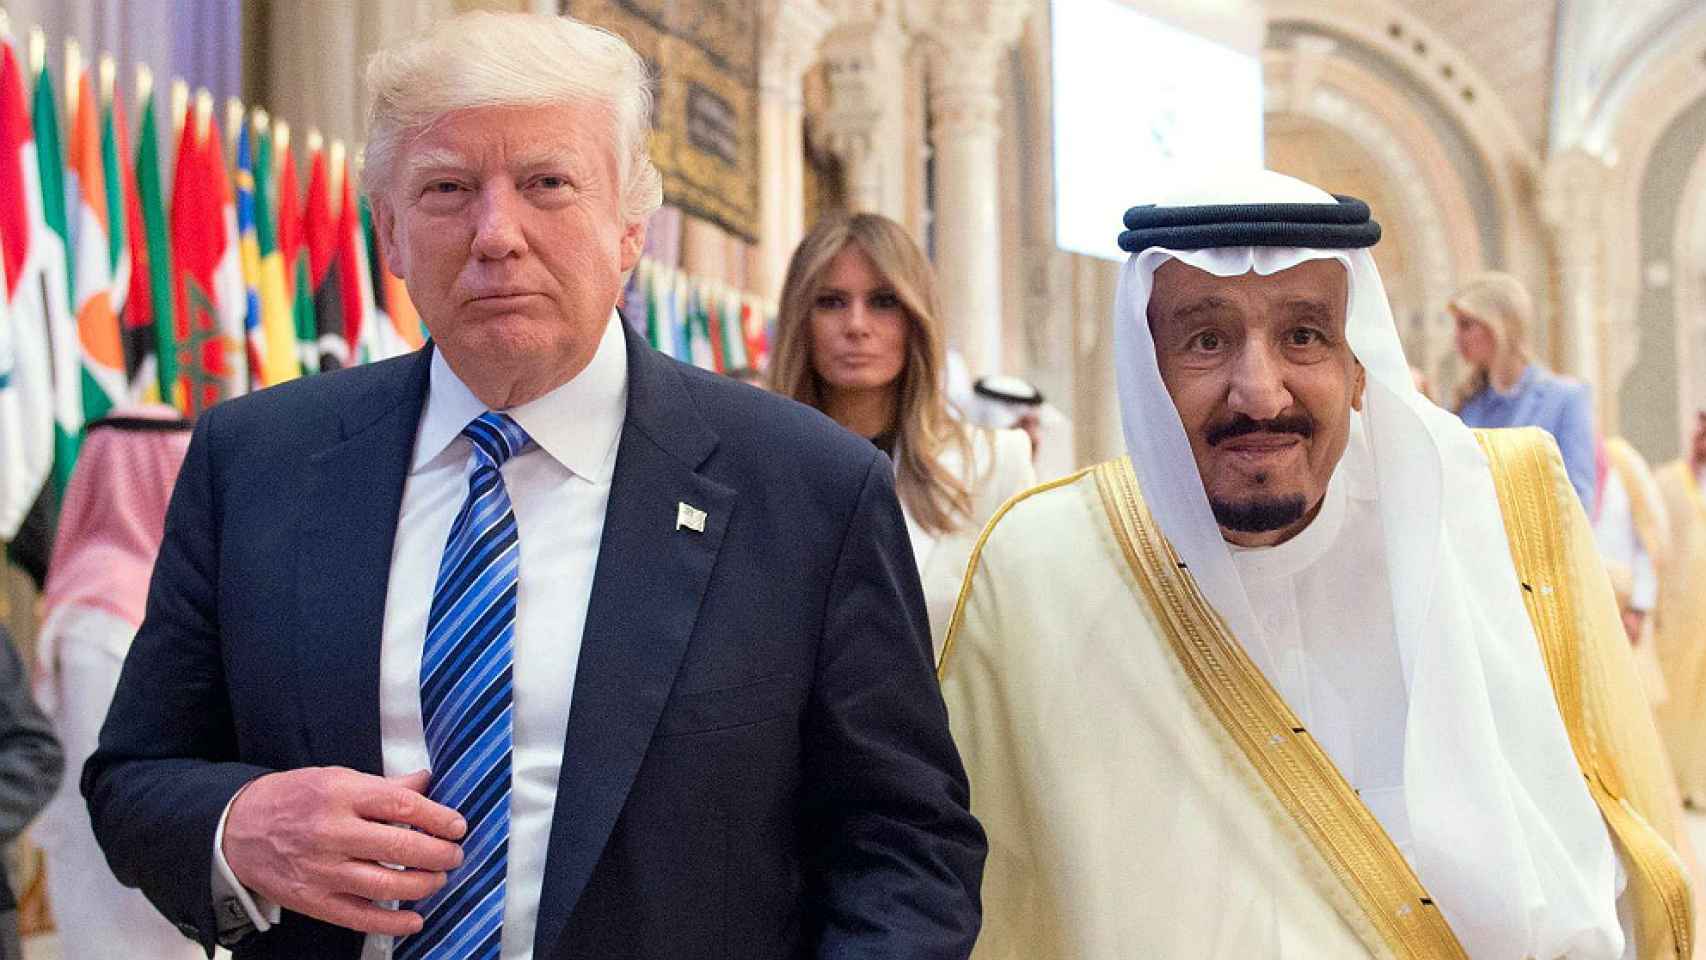 Donald Trump, junto al rey saudí Salman bin Abdulaziz, durante su última visita a Riad.